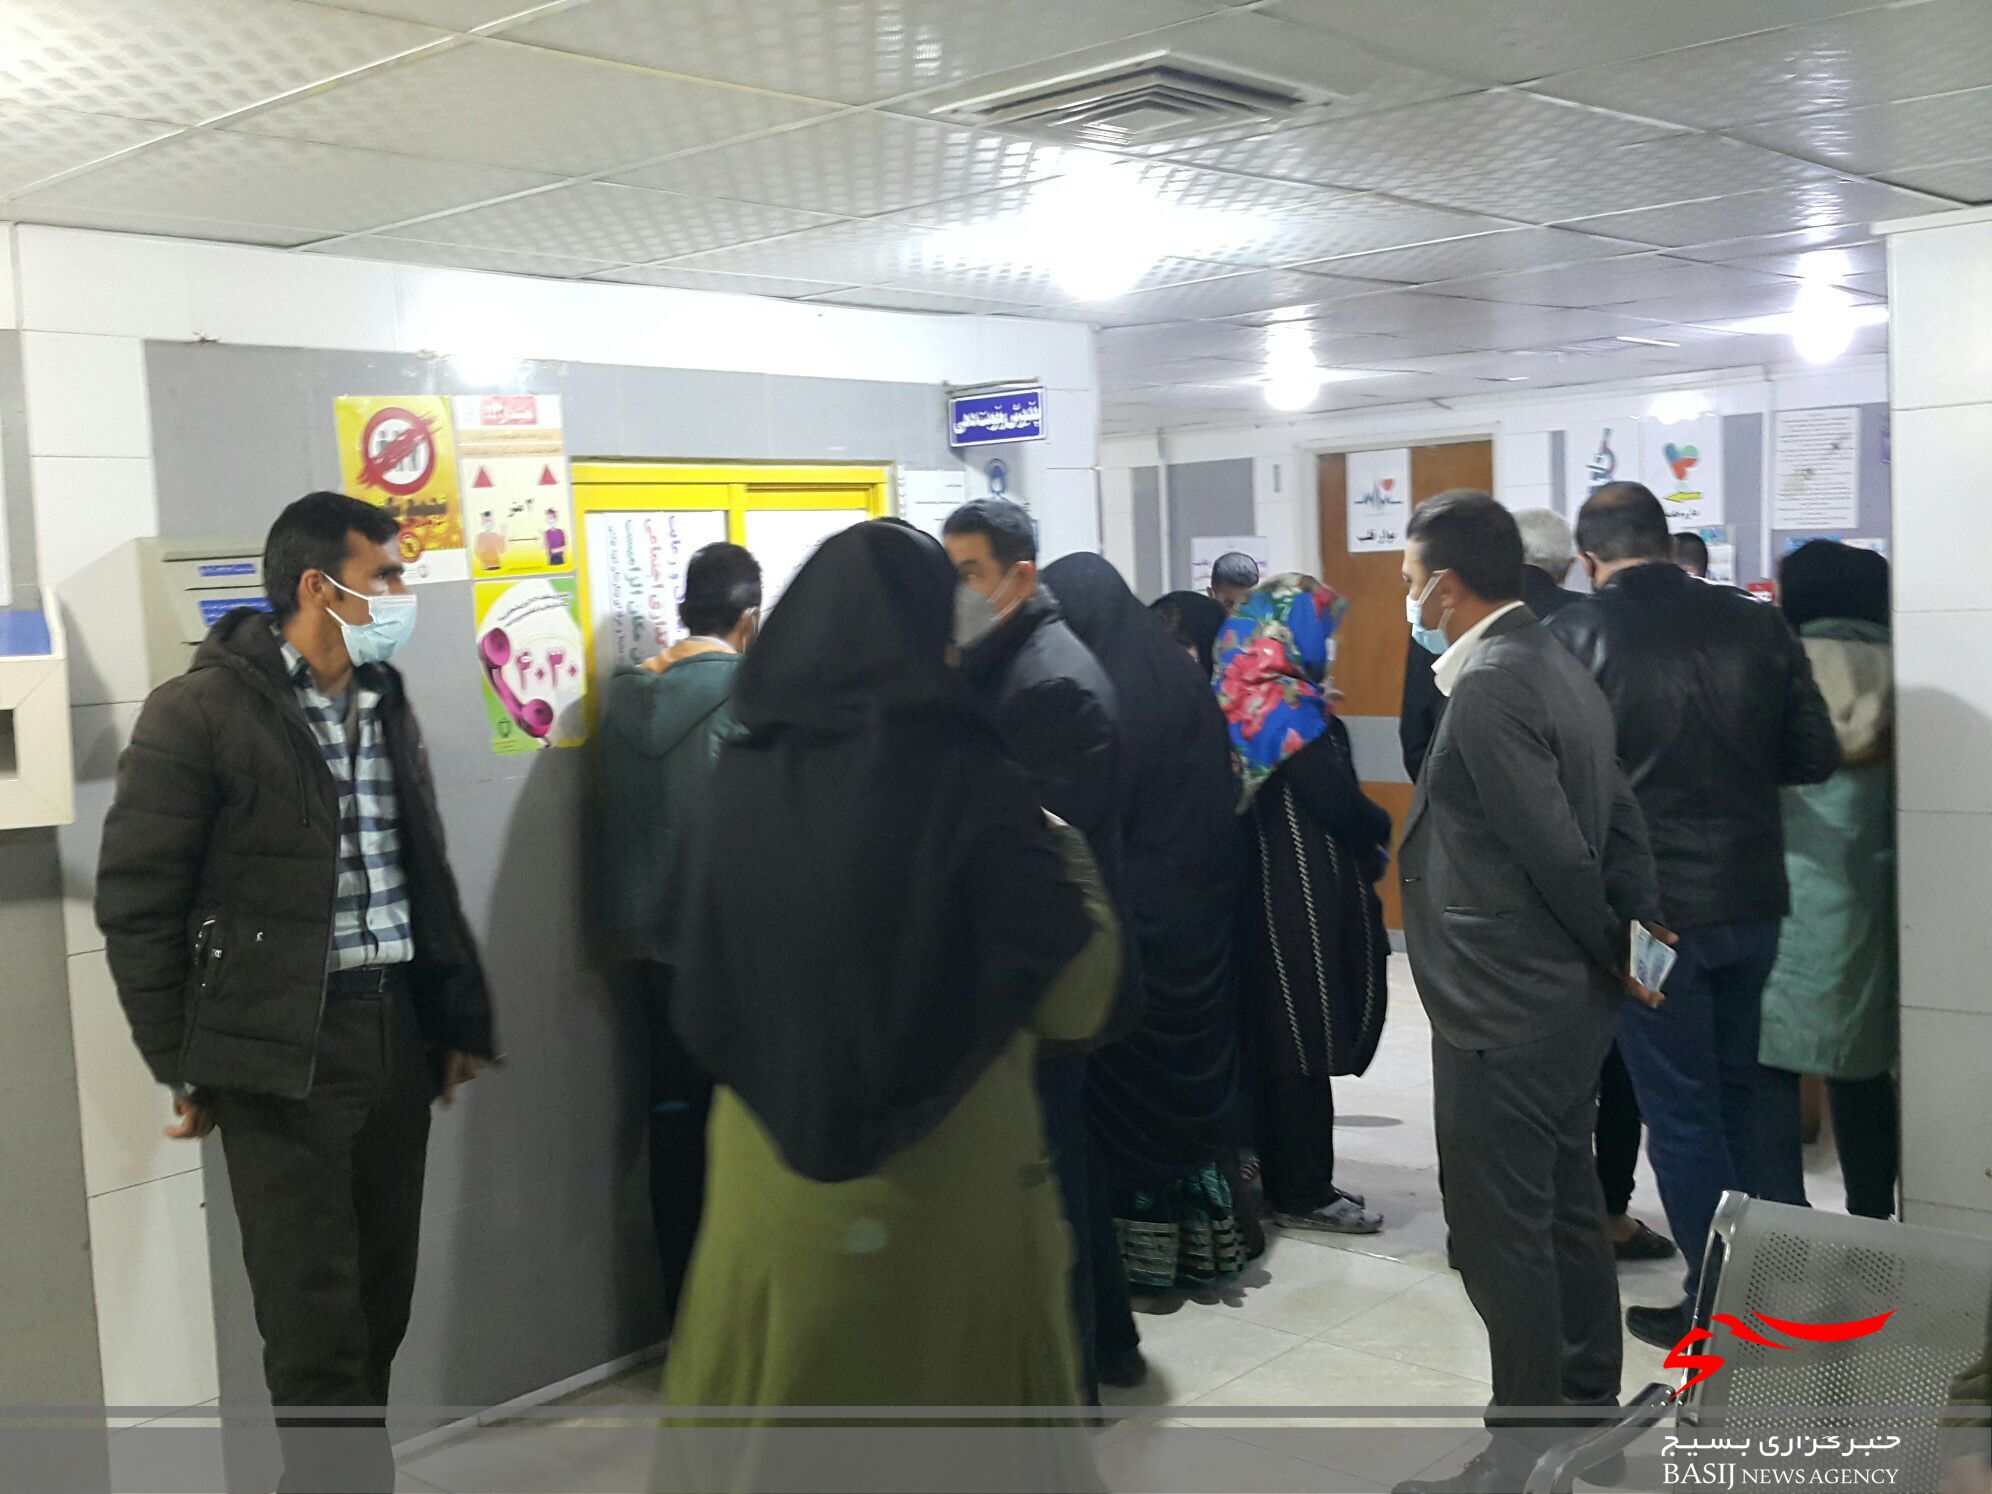 درمانگاه بیمارستان شهید بهشتی یاسوج محلی برای گسترش کرونا